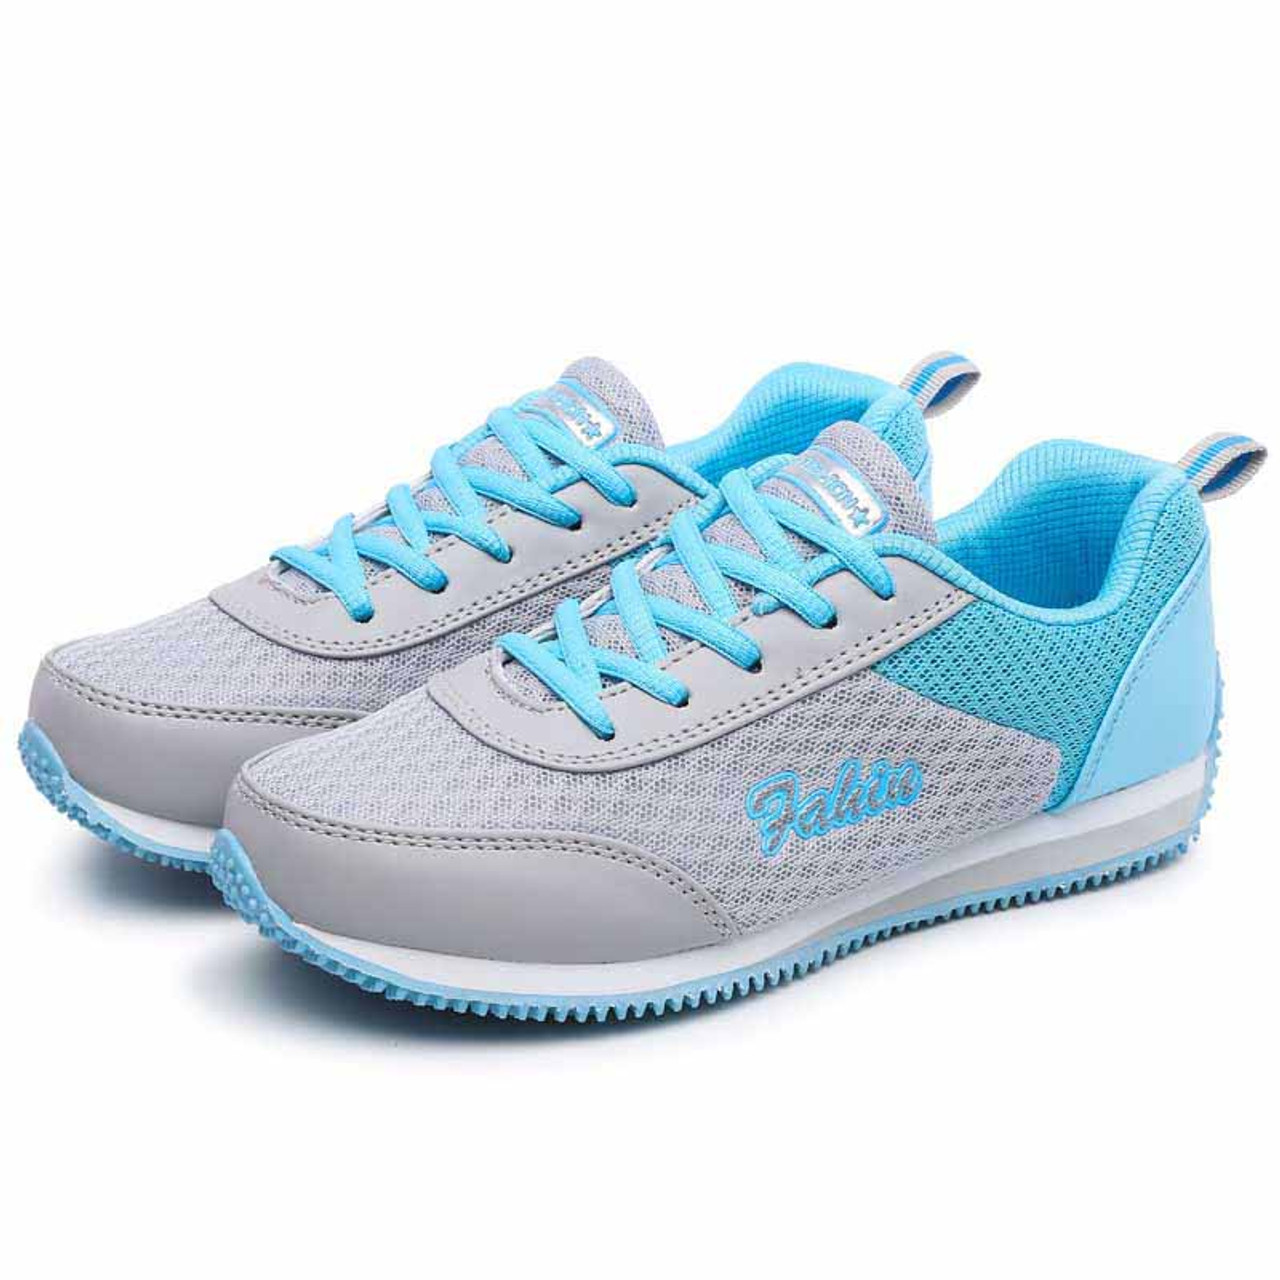 Grey blue pattern casual lace up shoe sneaker | Womens shoe sneakers ...